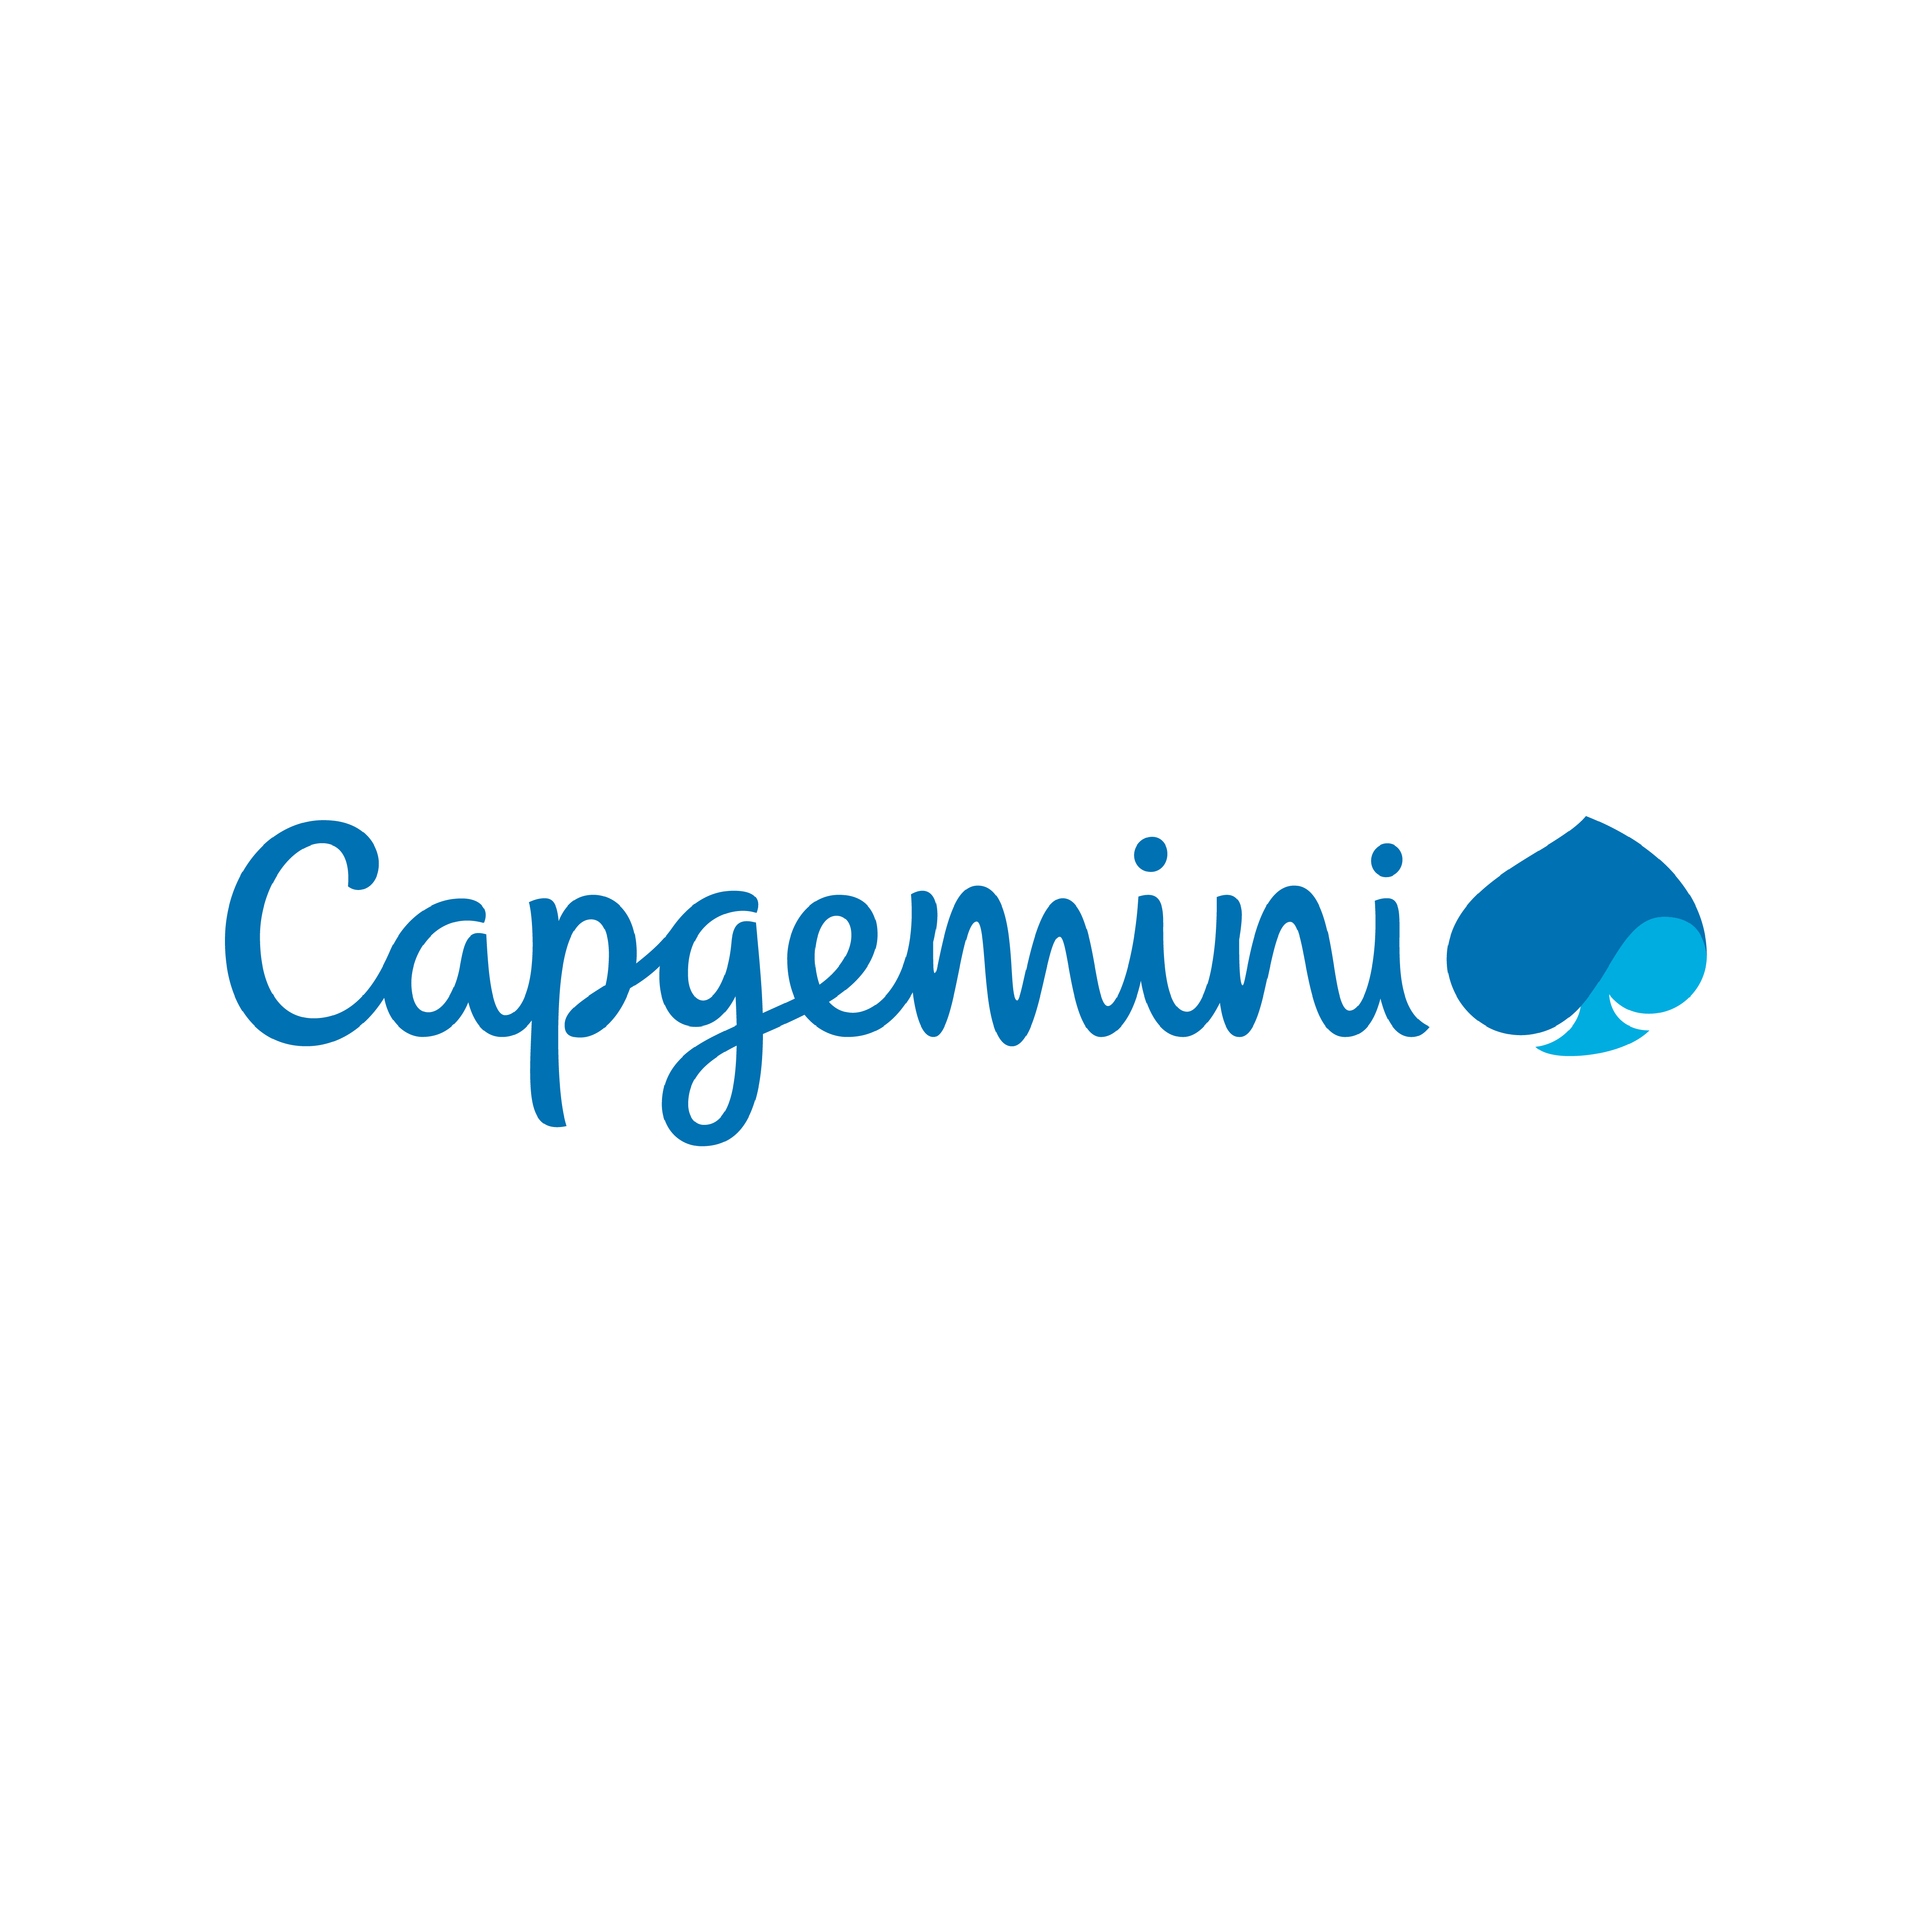 capgemini (square)